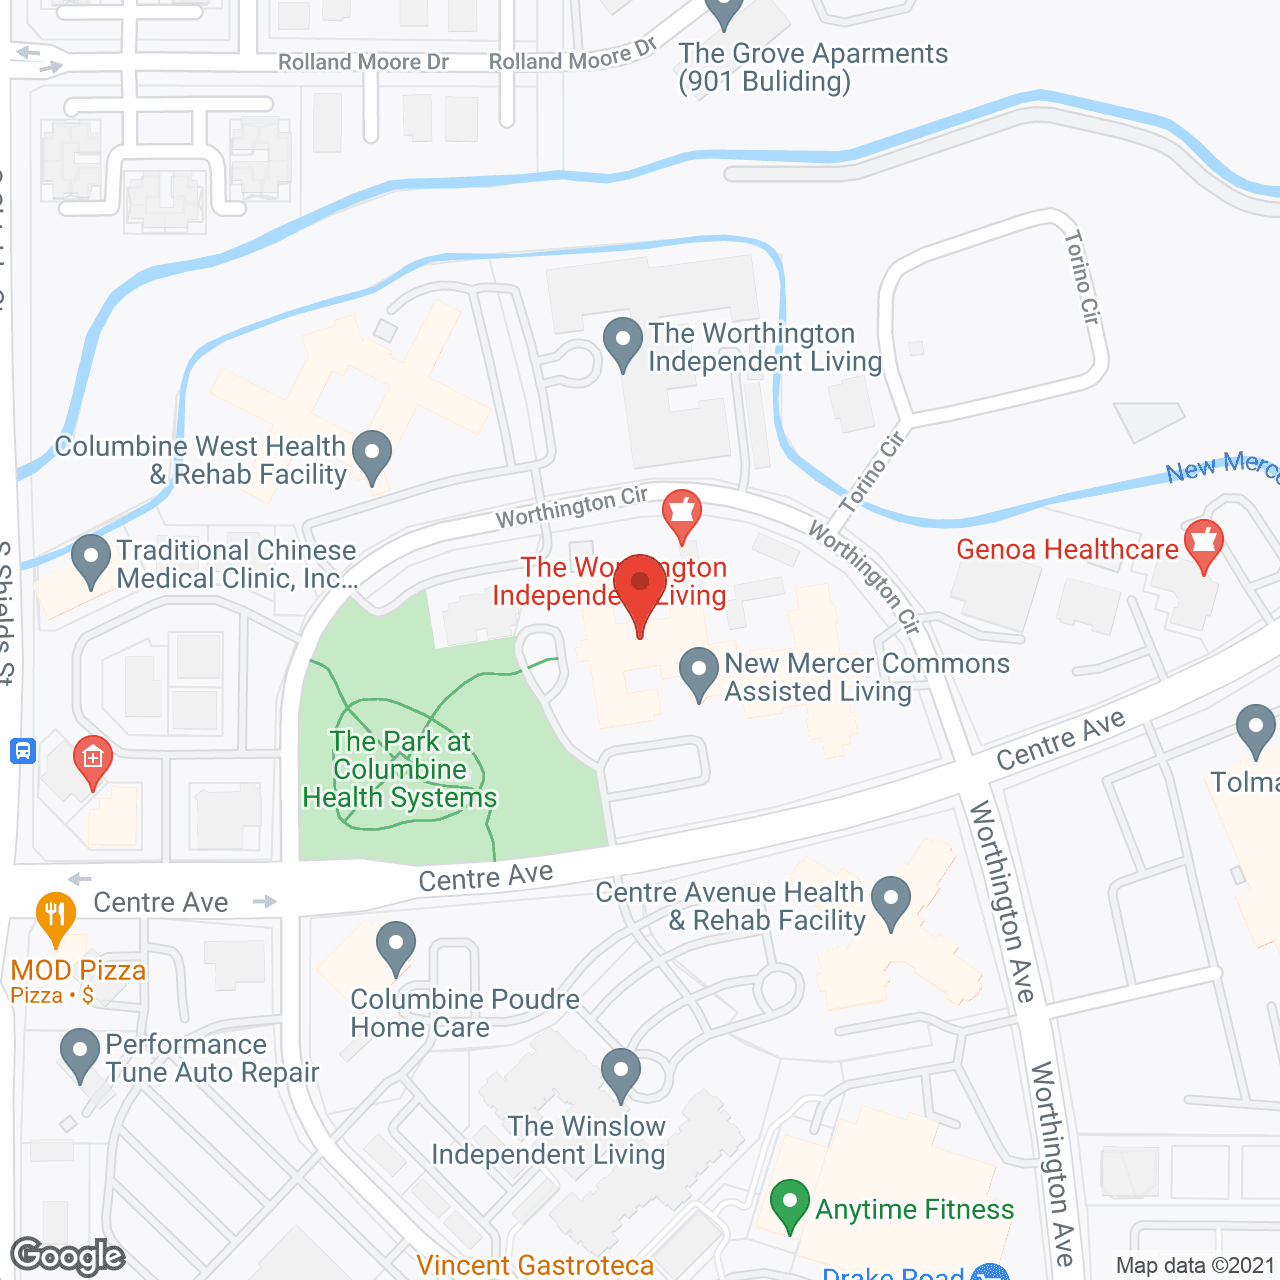 New Mercer Commons in google map